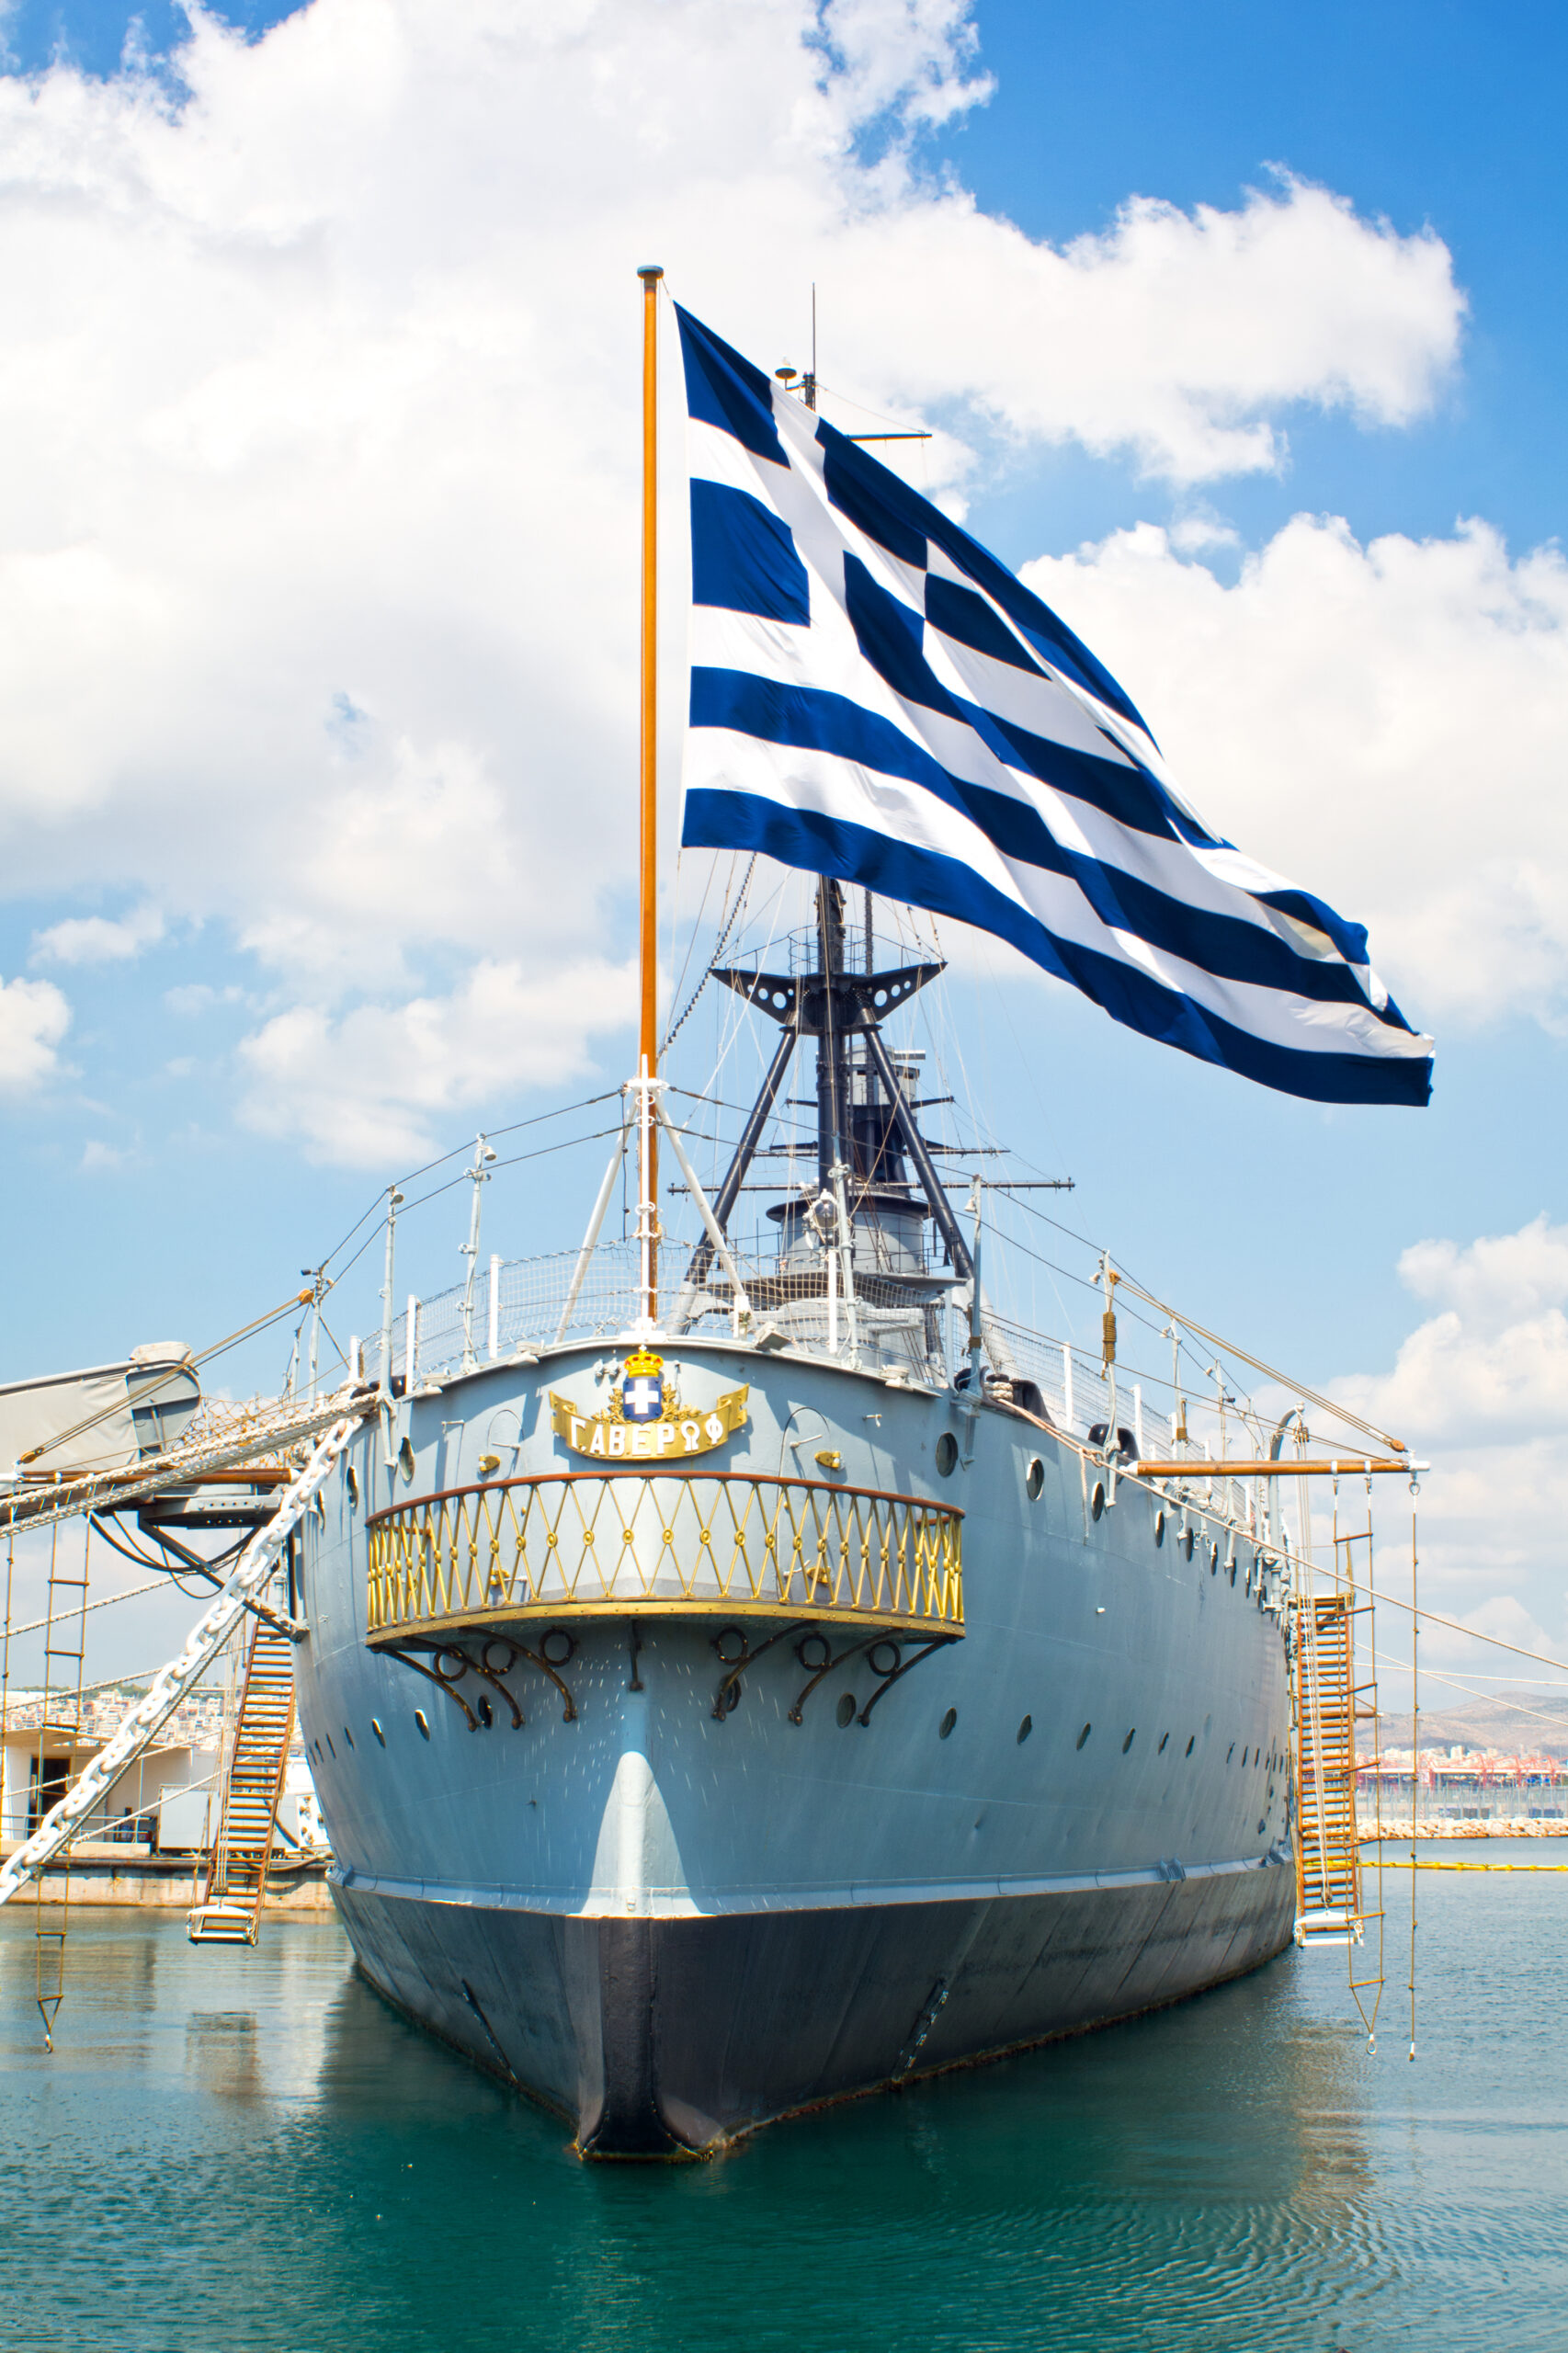 ndustria construcțiilor navale este o altă parte importantă a sectorului industrial al Greciei. Sursa foto: dreamstime